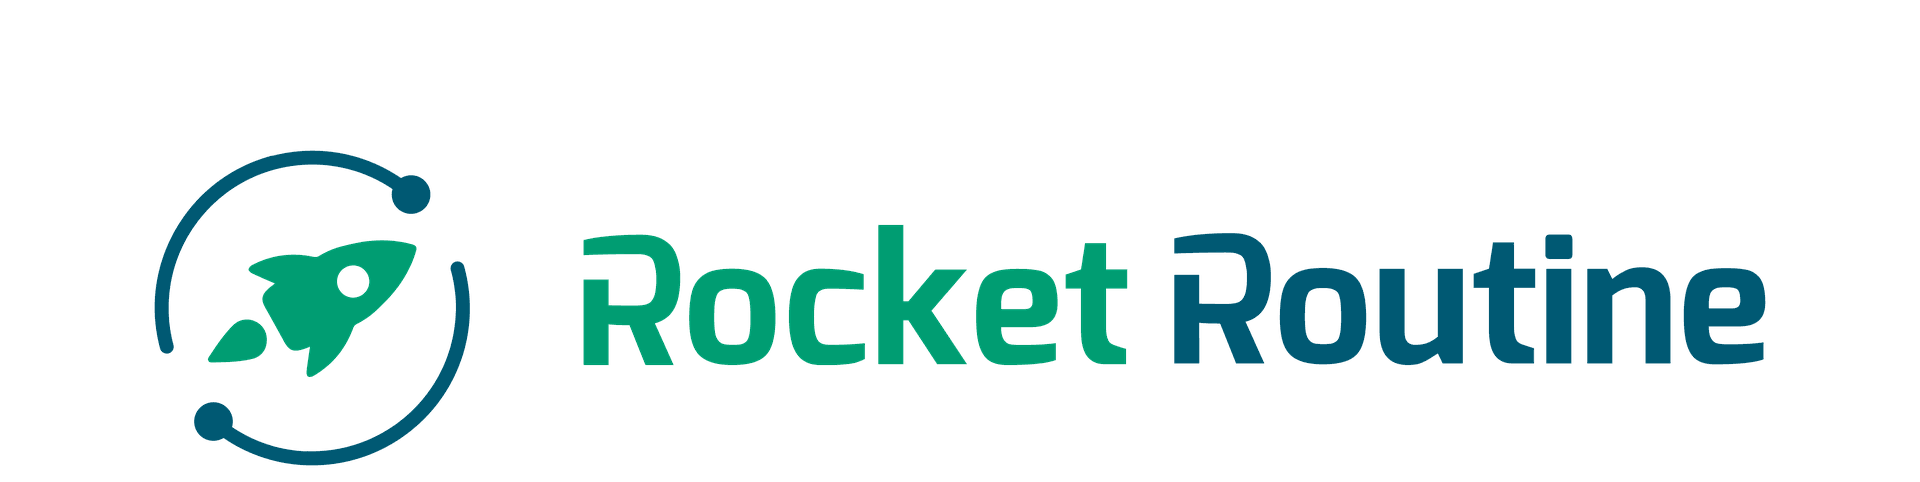 Rocket Routine: Die Strategie-Software für alle im Unternehmen. Gemeinsam Ziele erreichen!